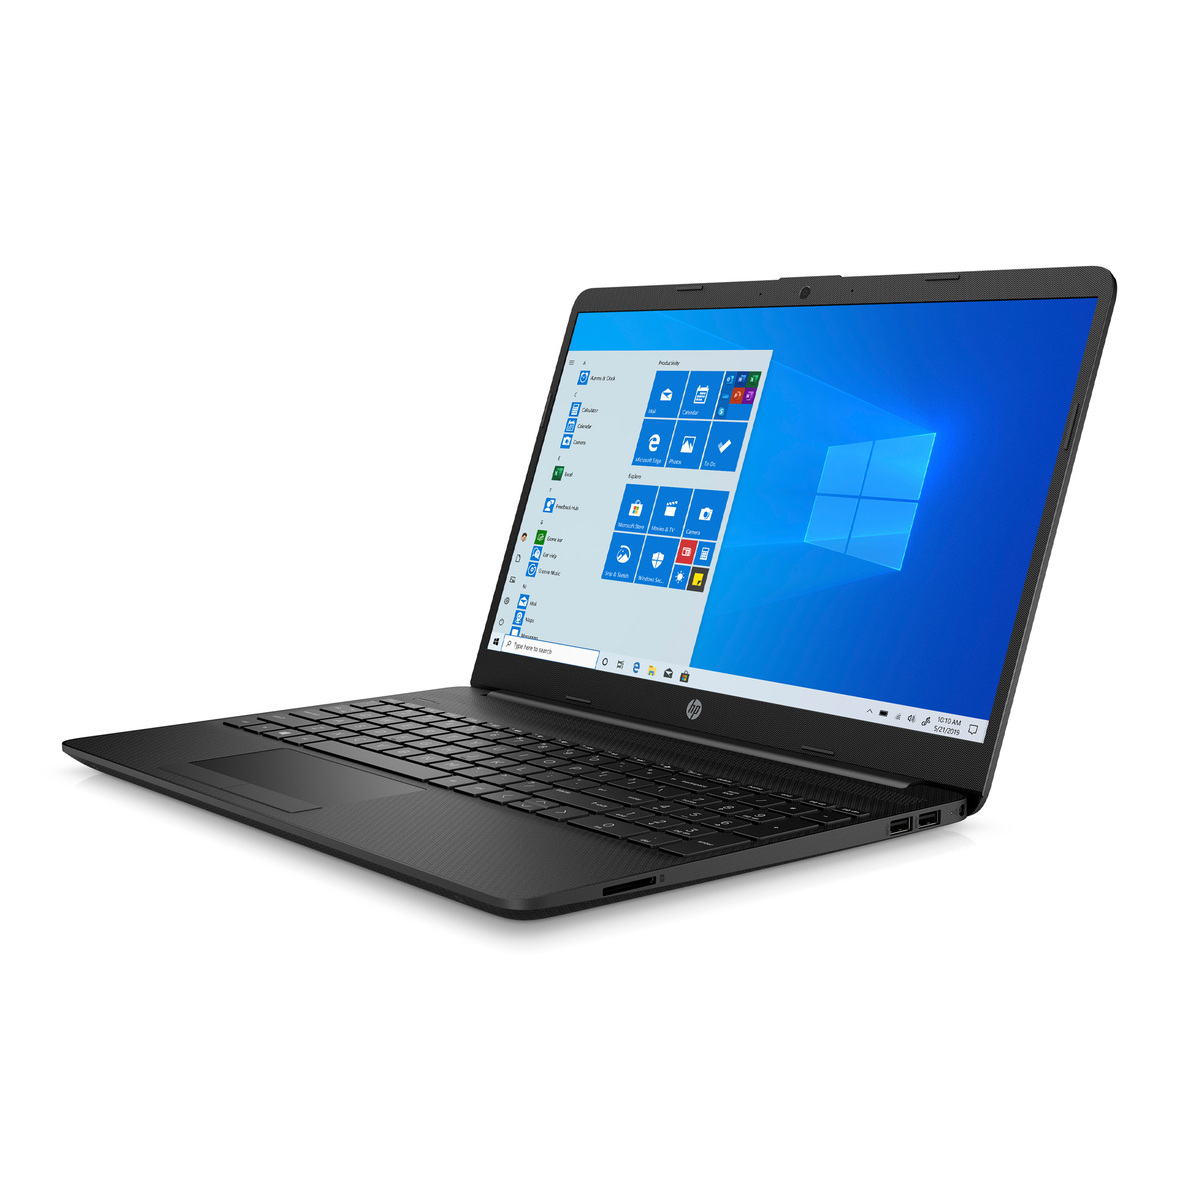 HP Laptop 15.6" HD,15-FQ1021 (277D0EA) Intel® Core™ i3 processor,4GB RAM,128GB SSD,Intel® UHD Graphics,Windows 10,Jet Black